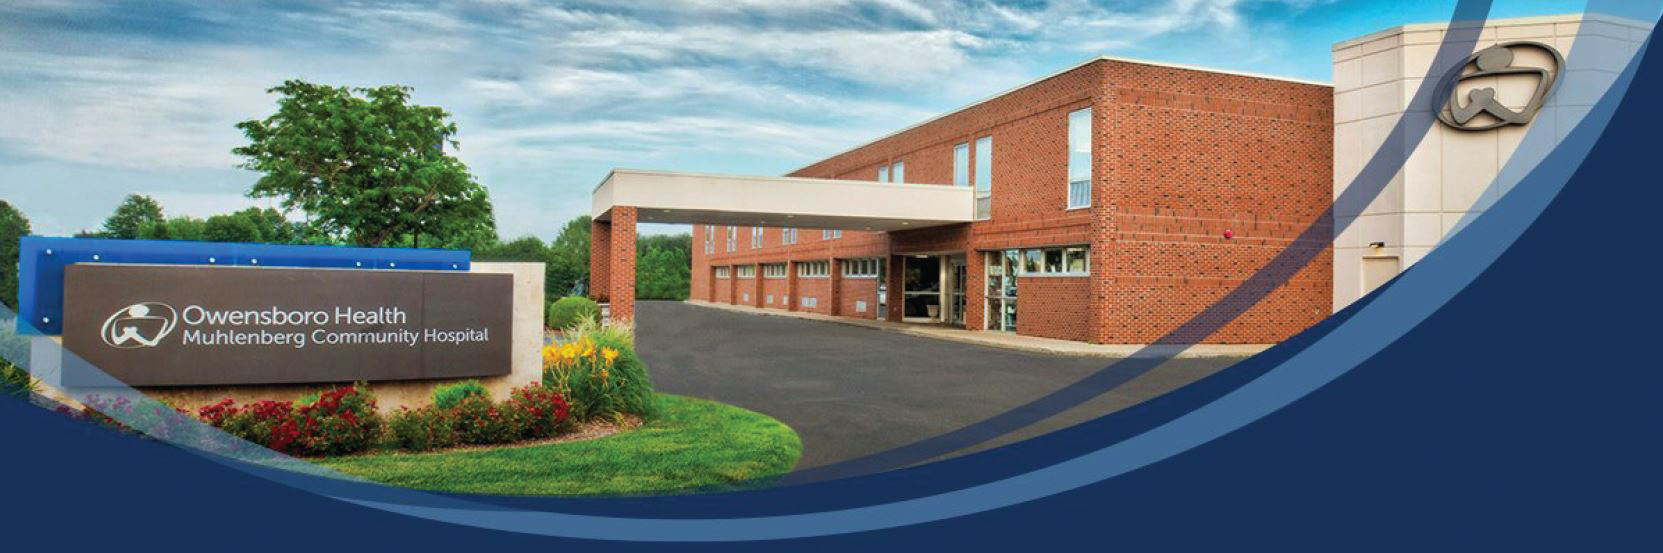 Owensboro Health Muhlenberg Community Hospital facility